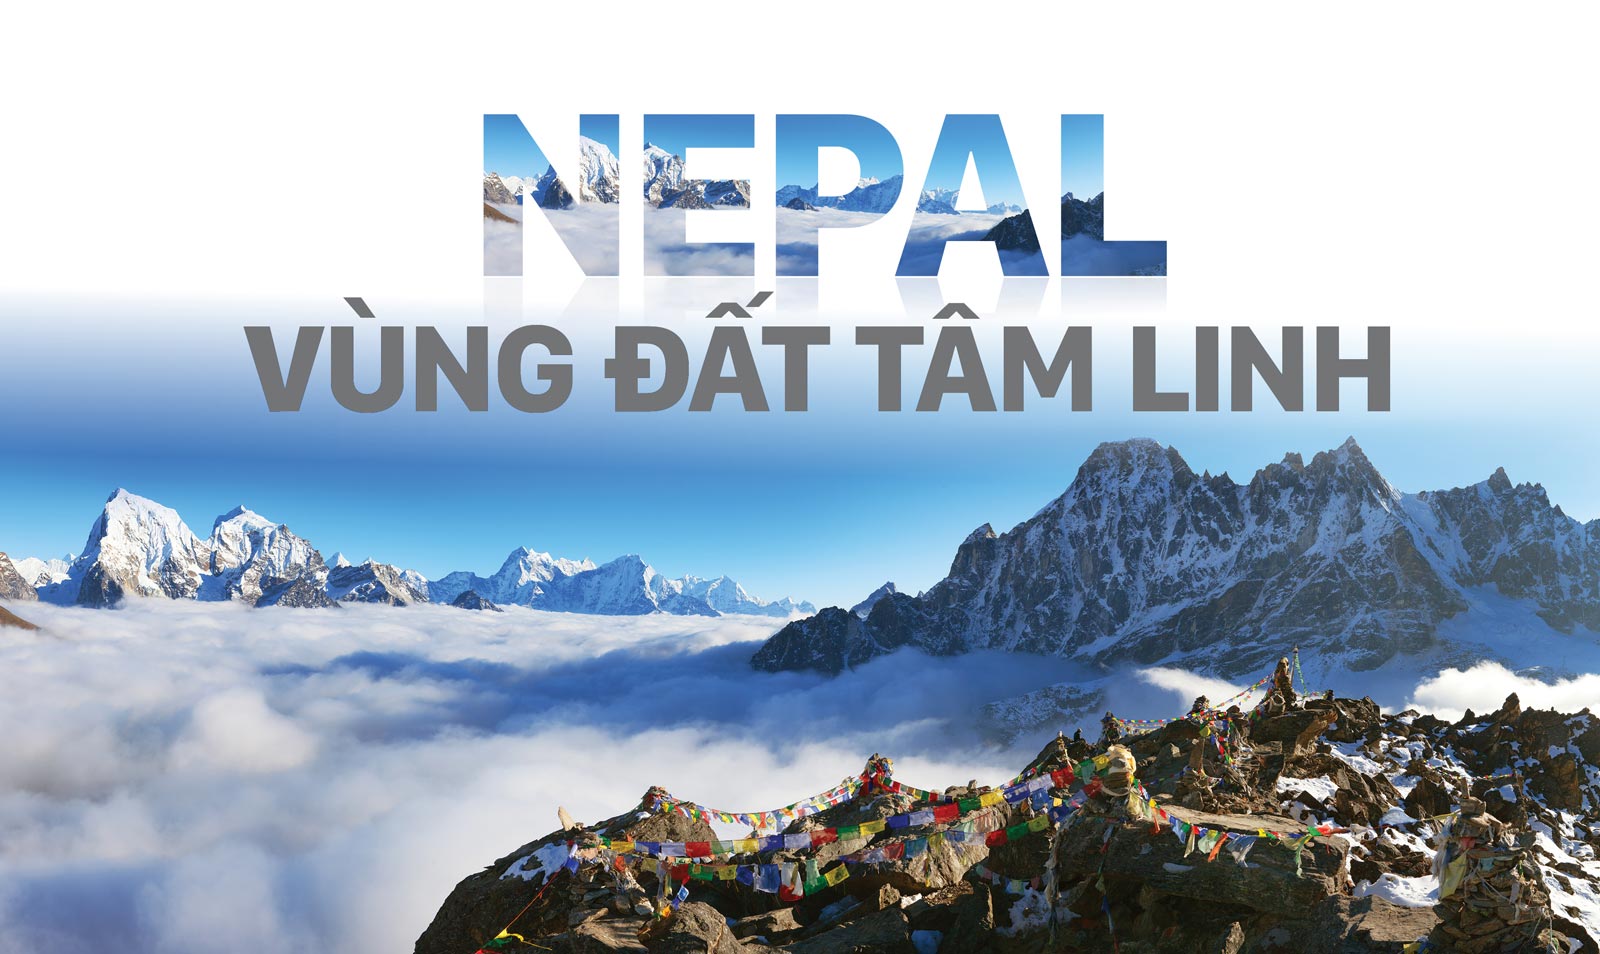 Nepal - Vùng đất tâm linh